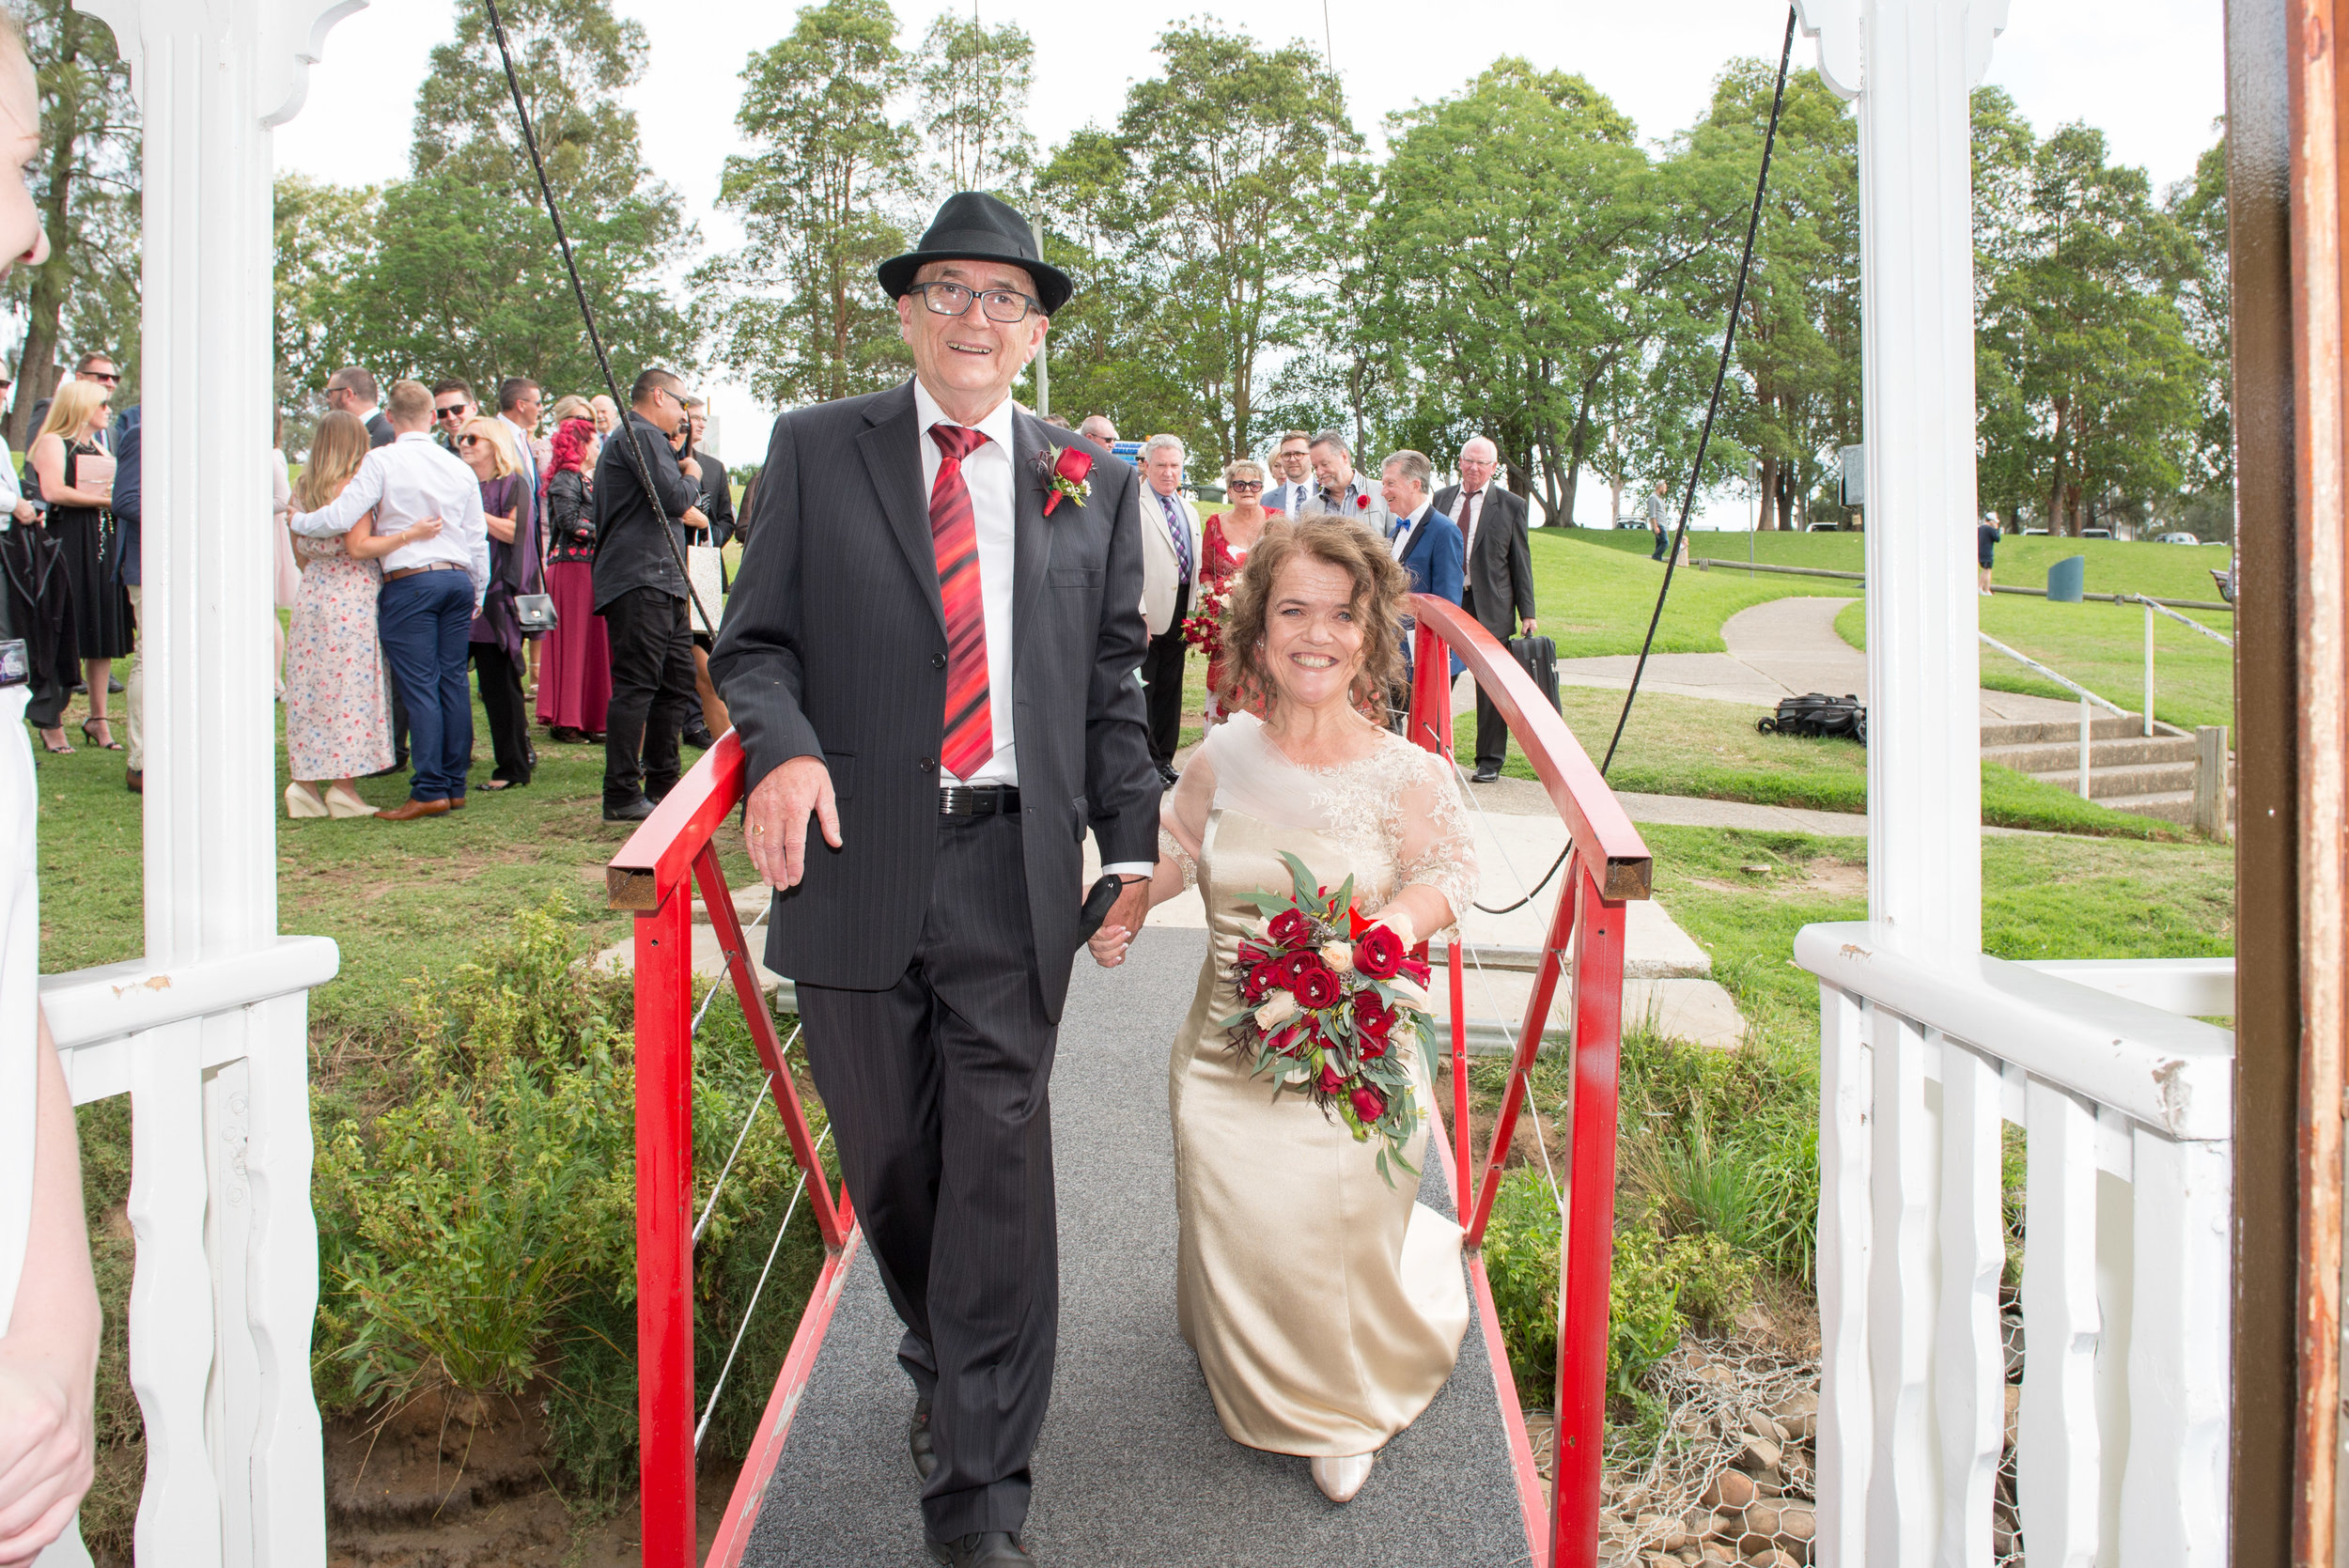 Belle wedding gangway board enter bride groom red jetty guests.jpg